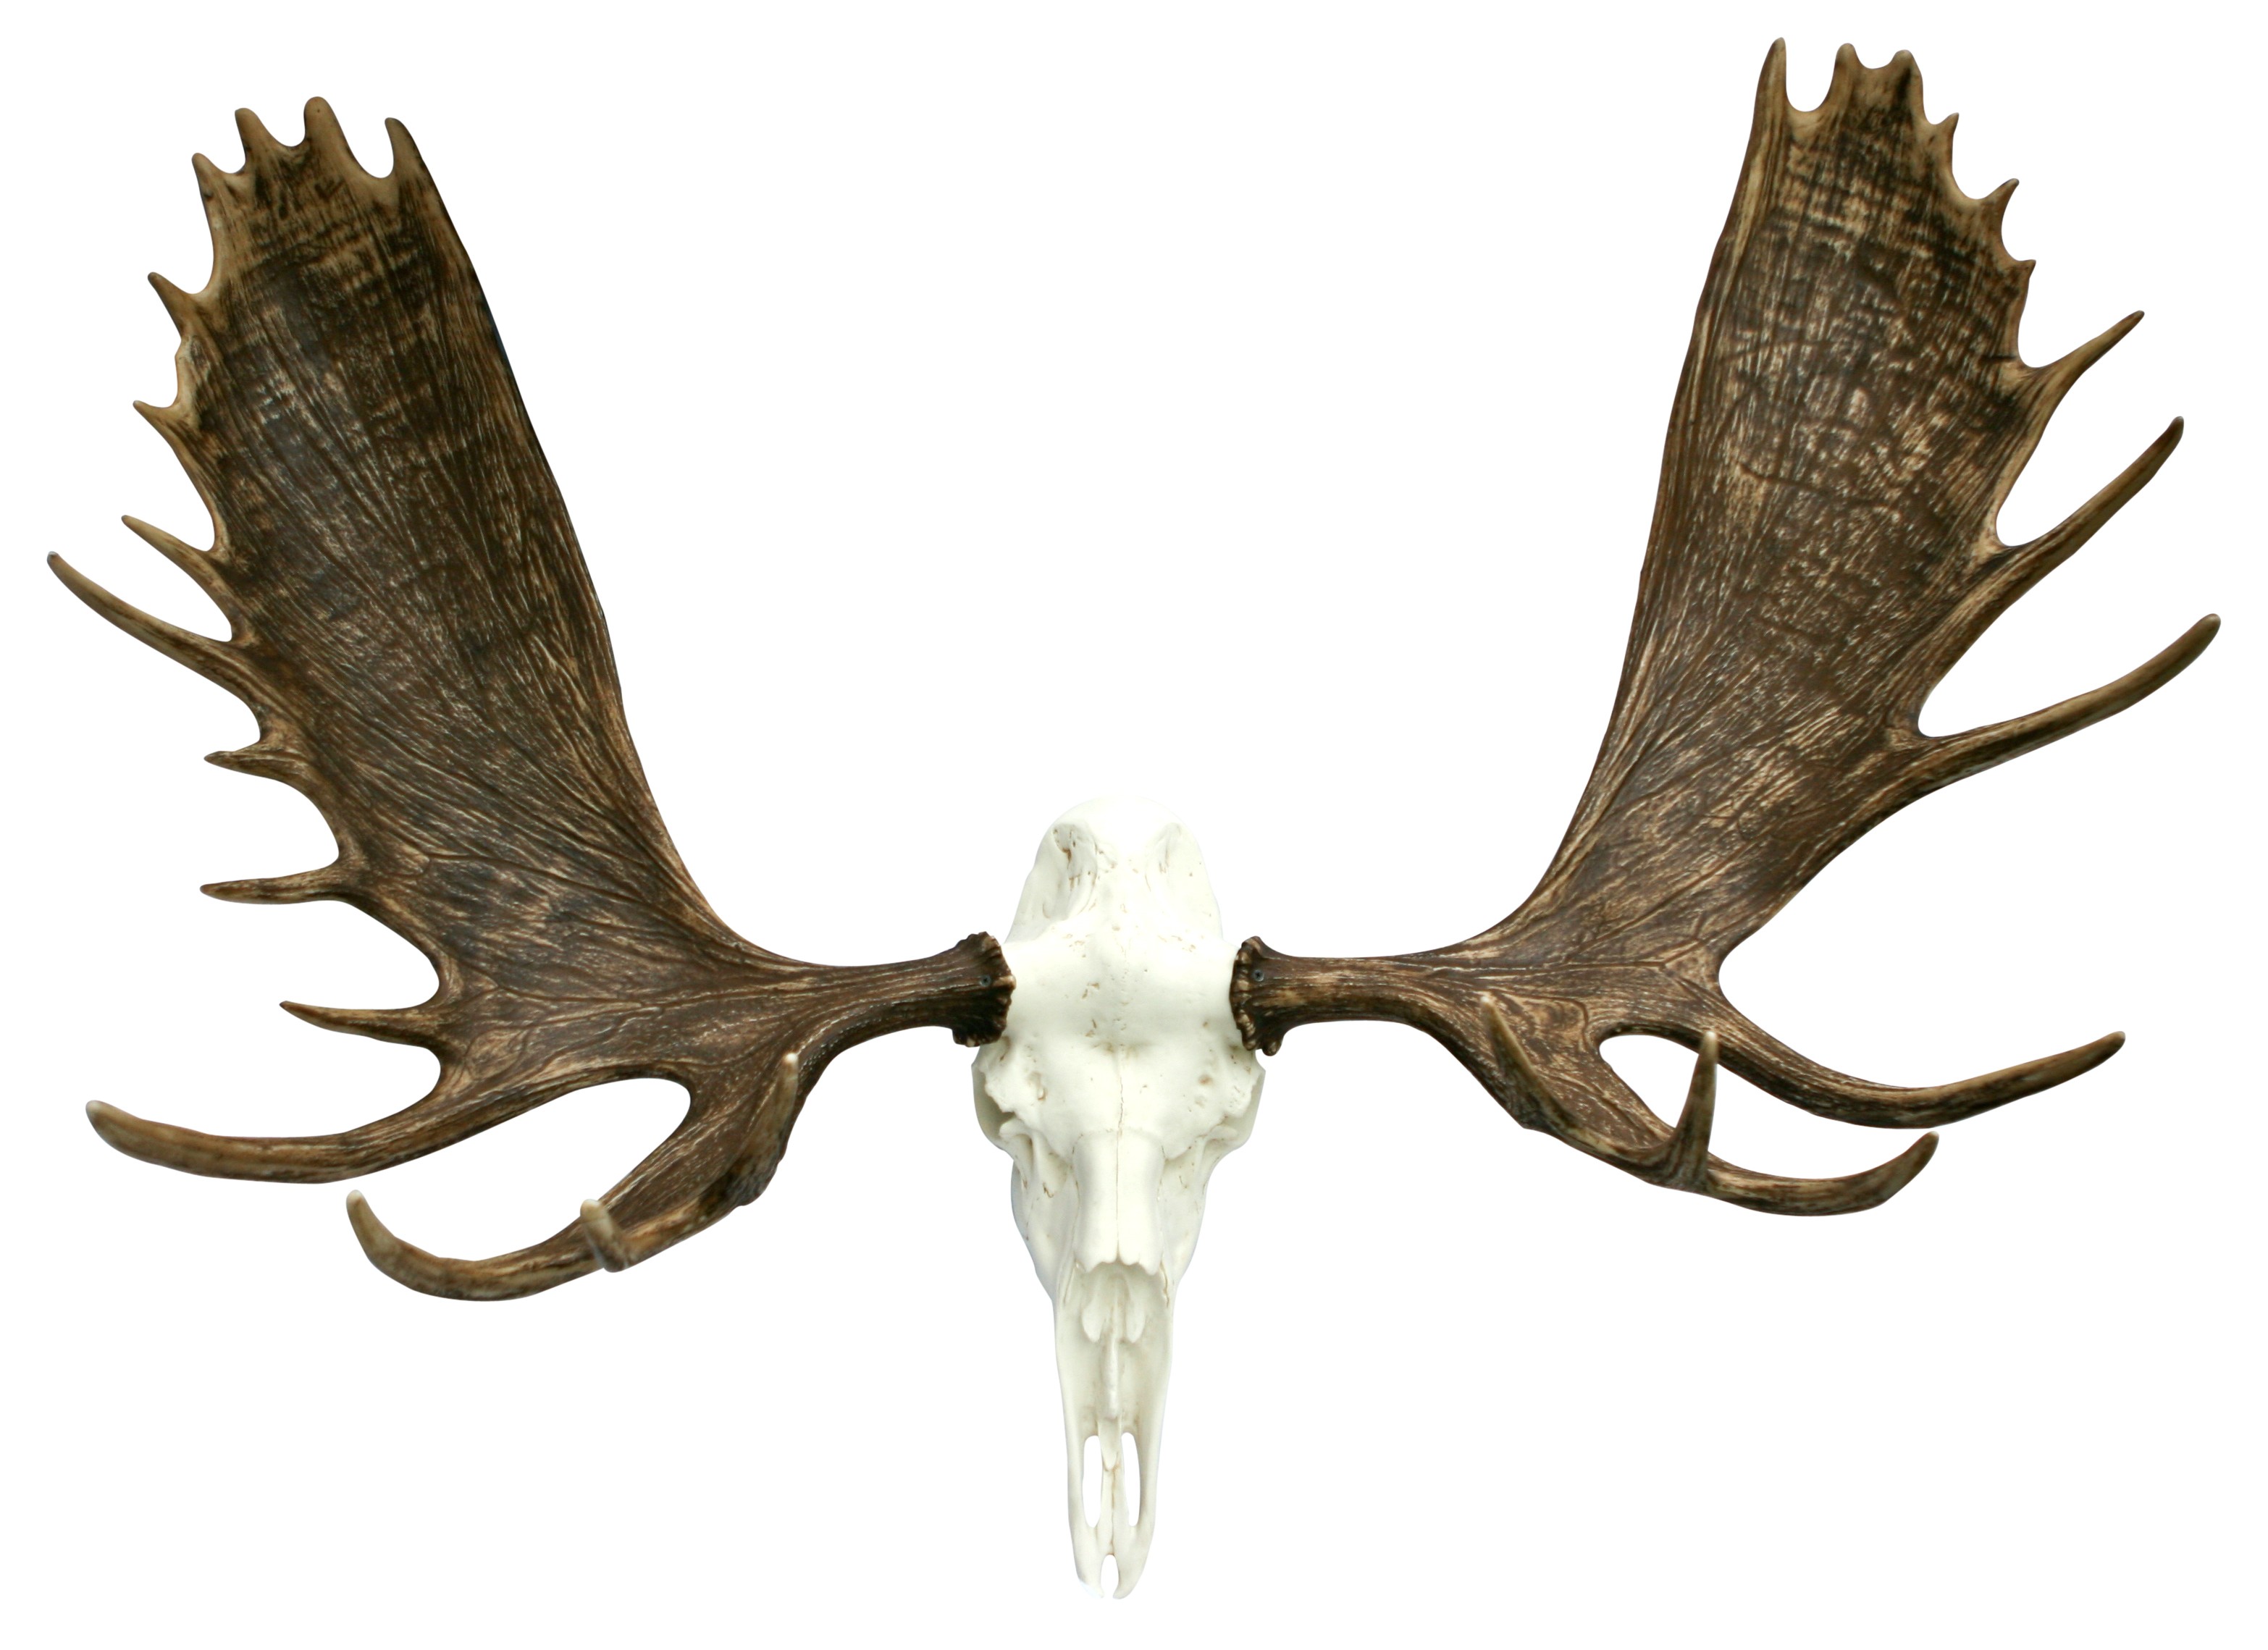 Moose trophy antlers. 